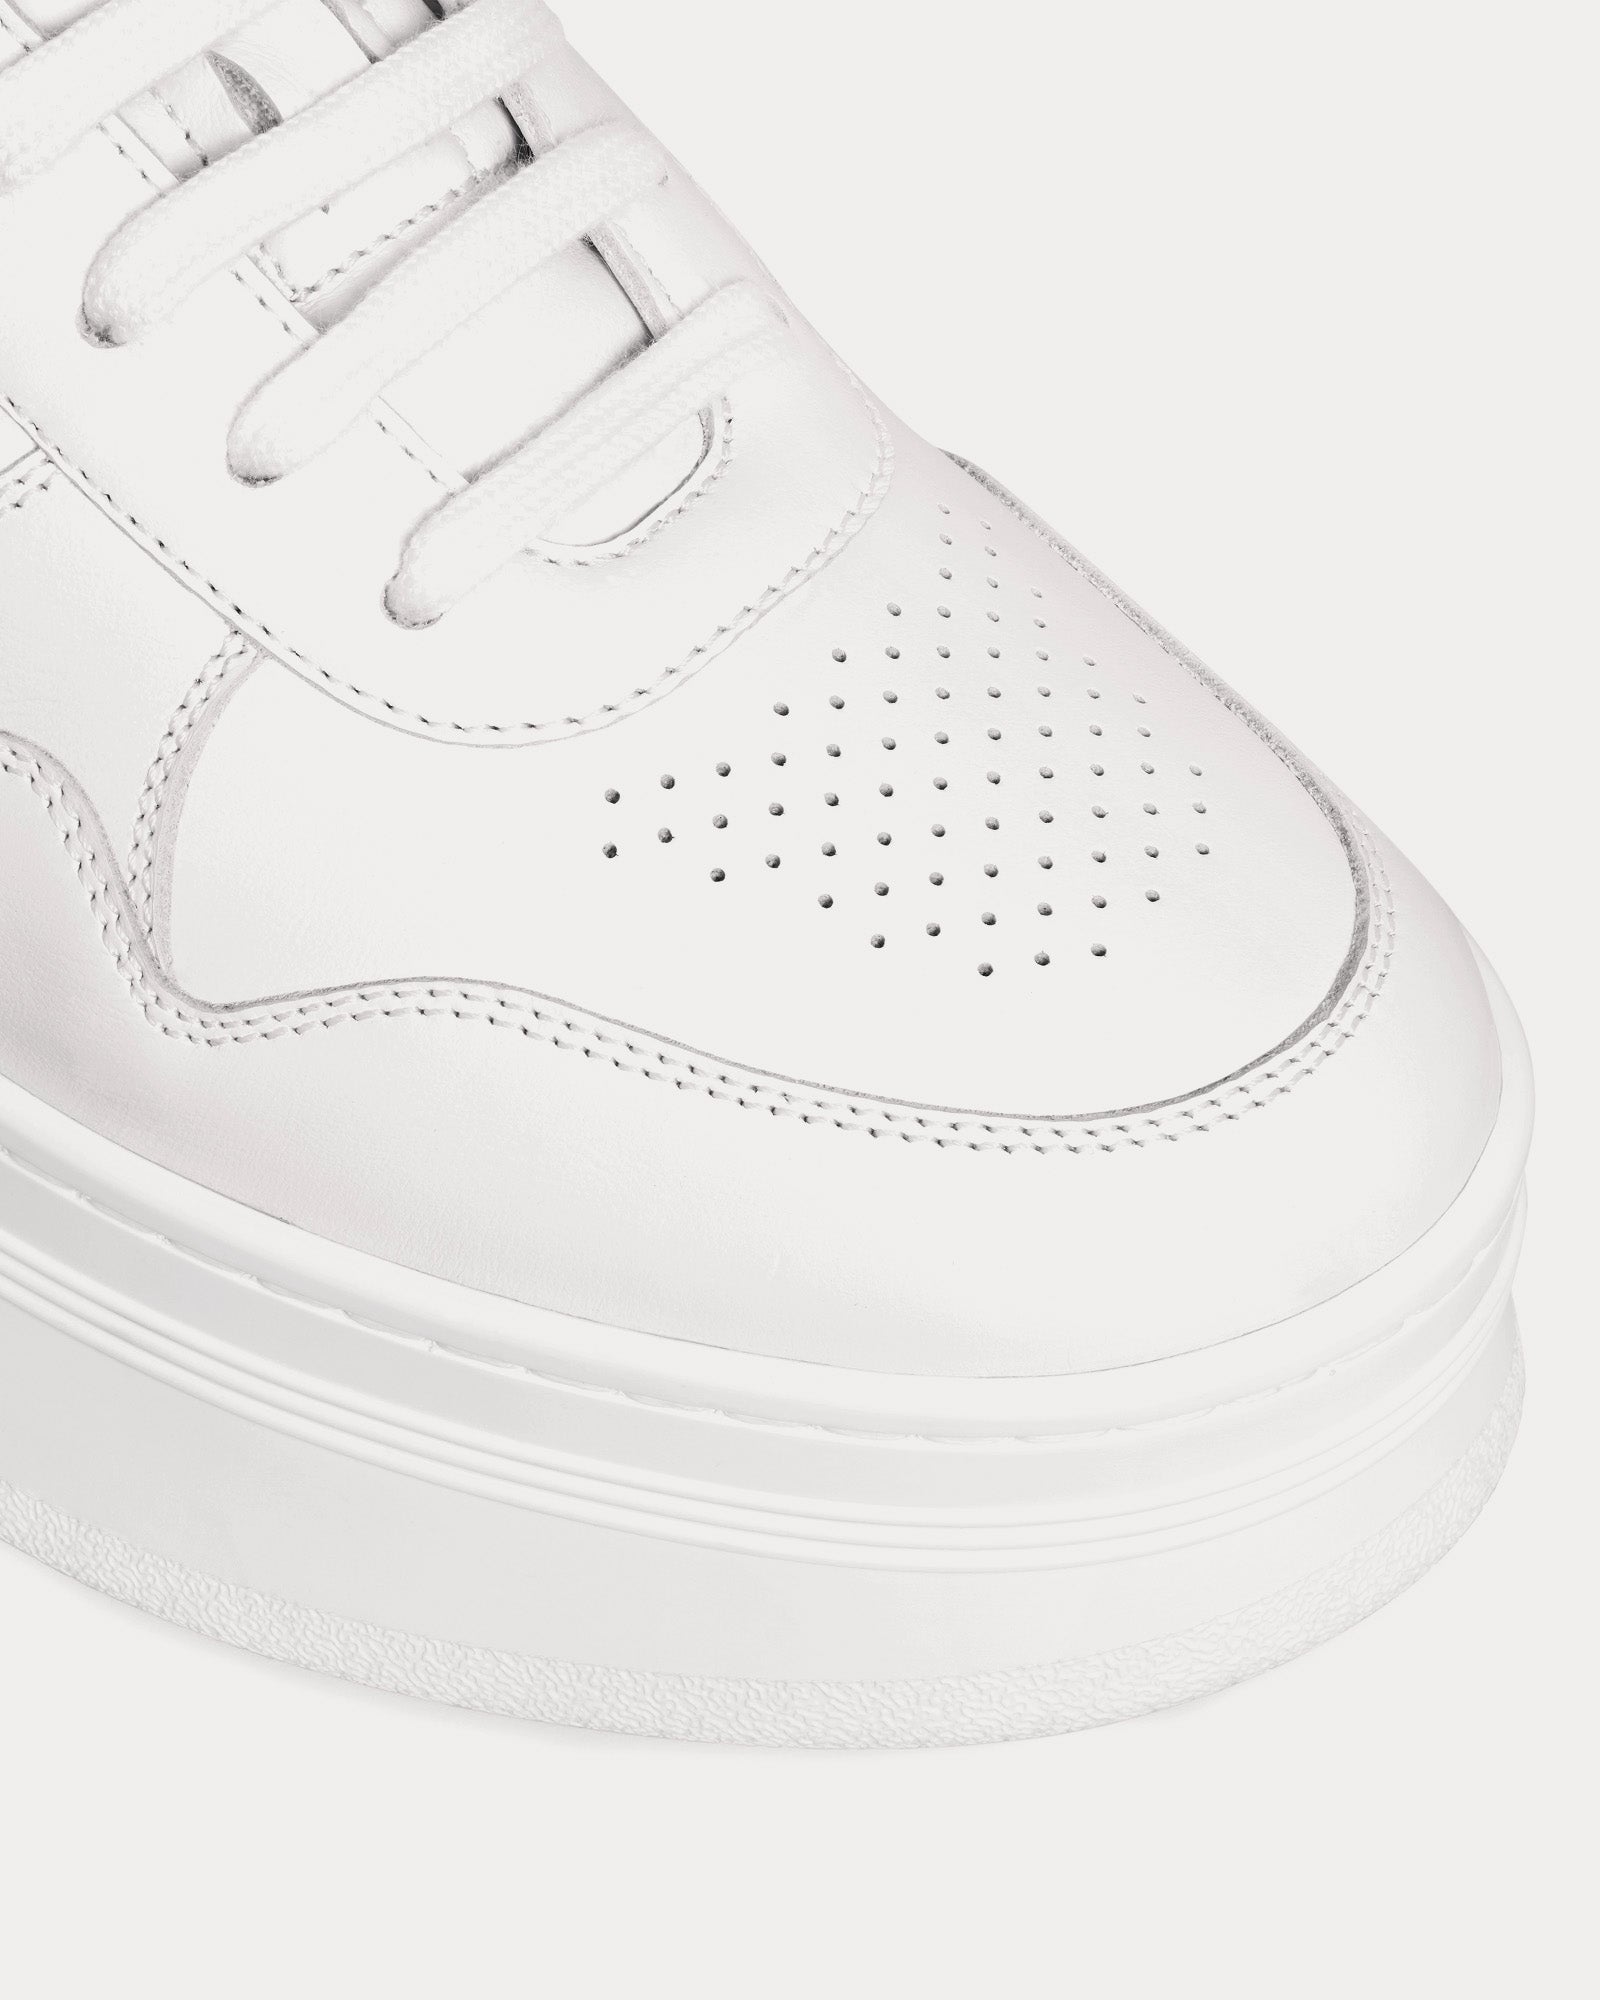 Celine - Block Wedge Calfskin Optic White / Pink Low Top Sneakers